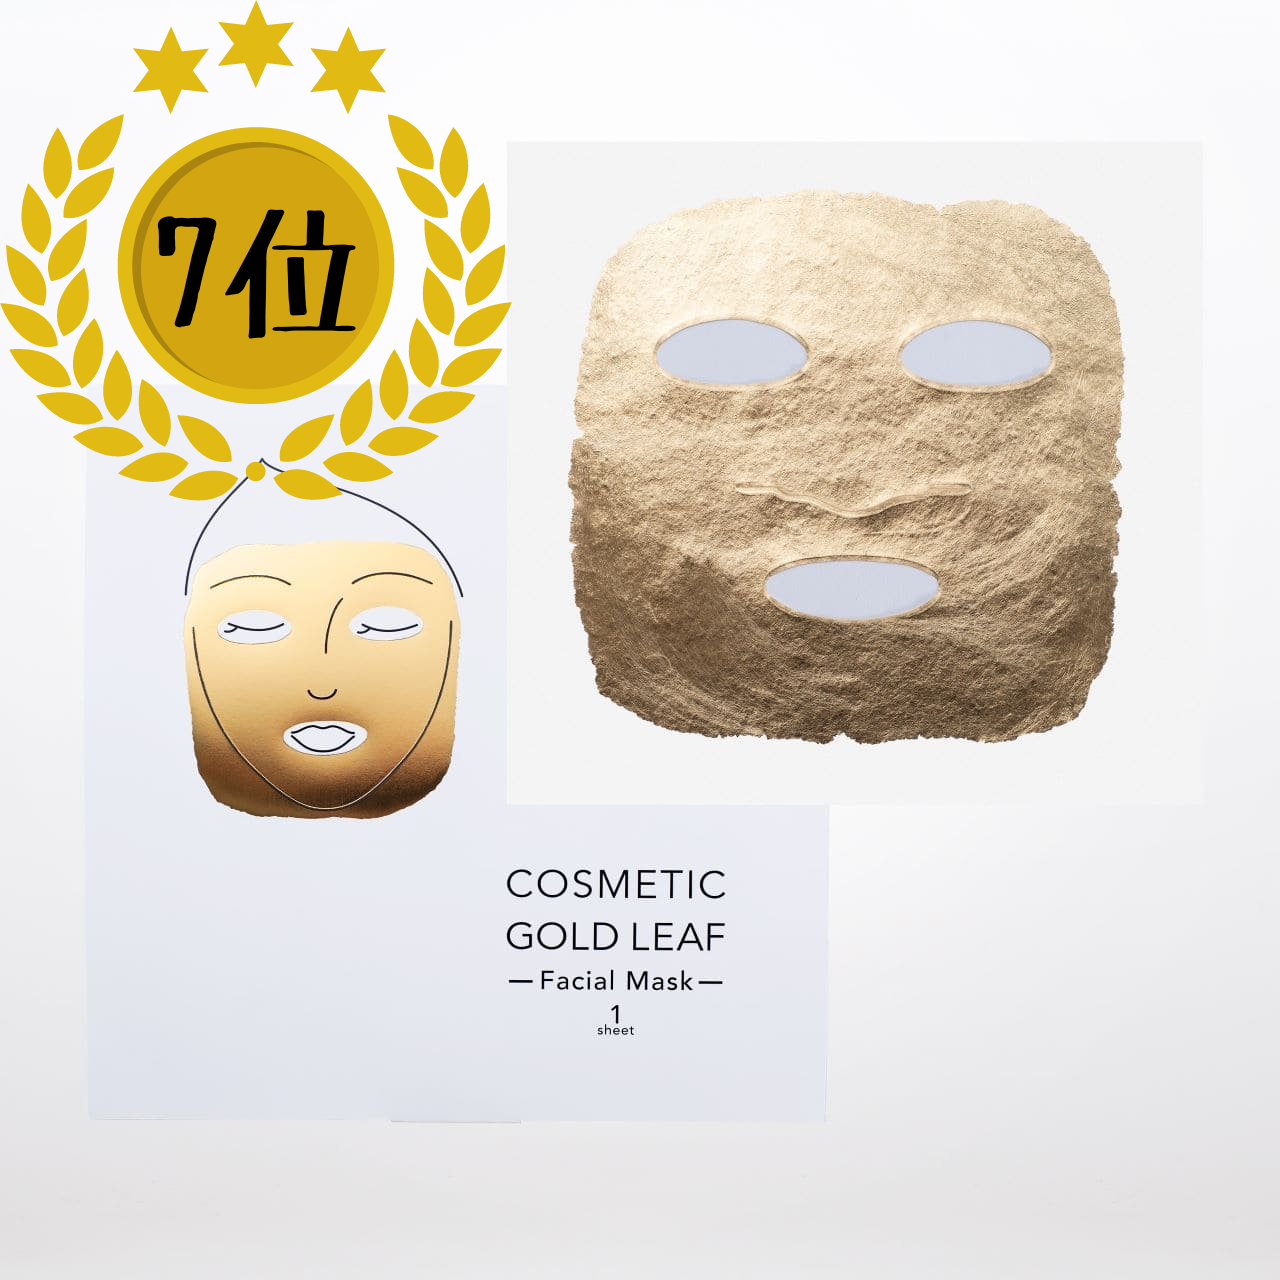 （7位）驚くのは圧倒的な箔のしなやかさ。さらに肌への効果を追求したプラチナ金箔「COSMETIC GOLD LEAF Facial Mask」